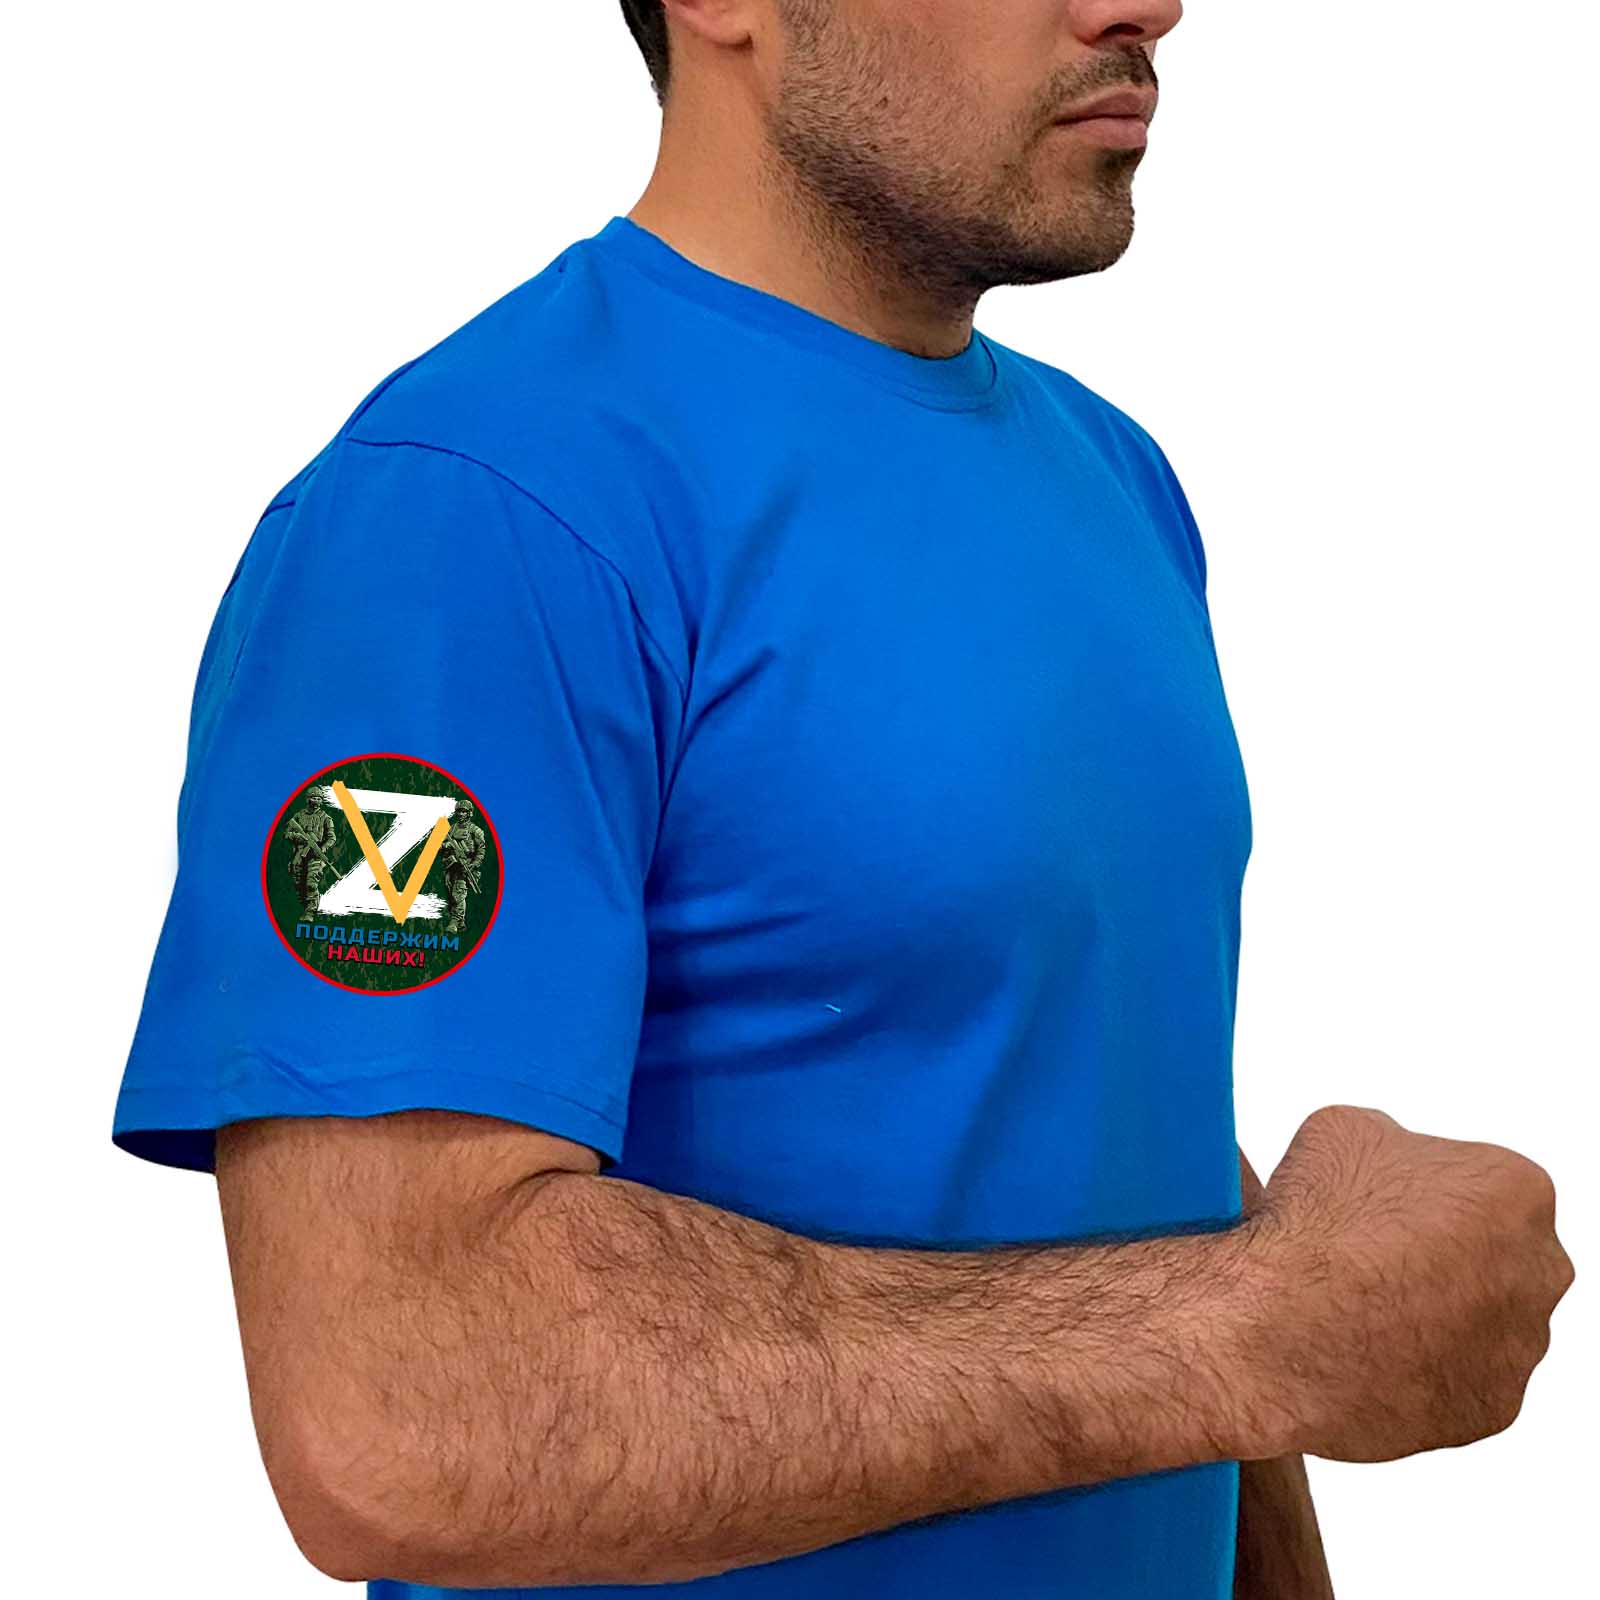 Купить мужскую надежную футболку Z V онлайн выгодно